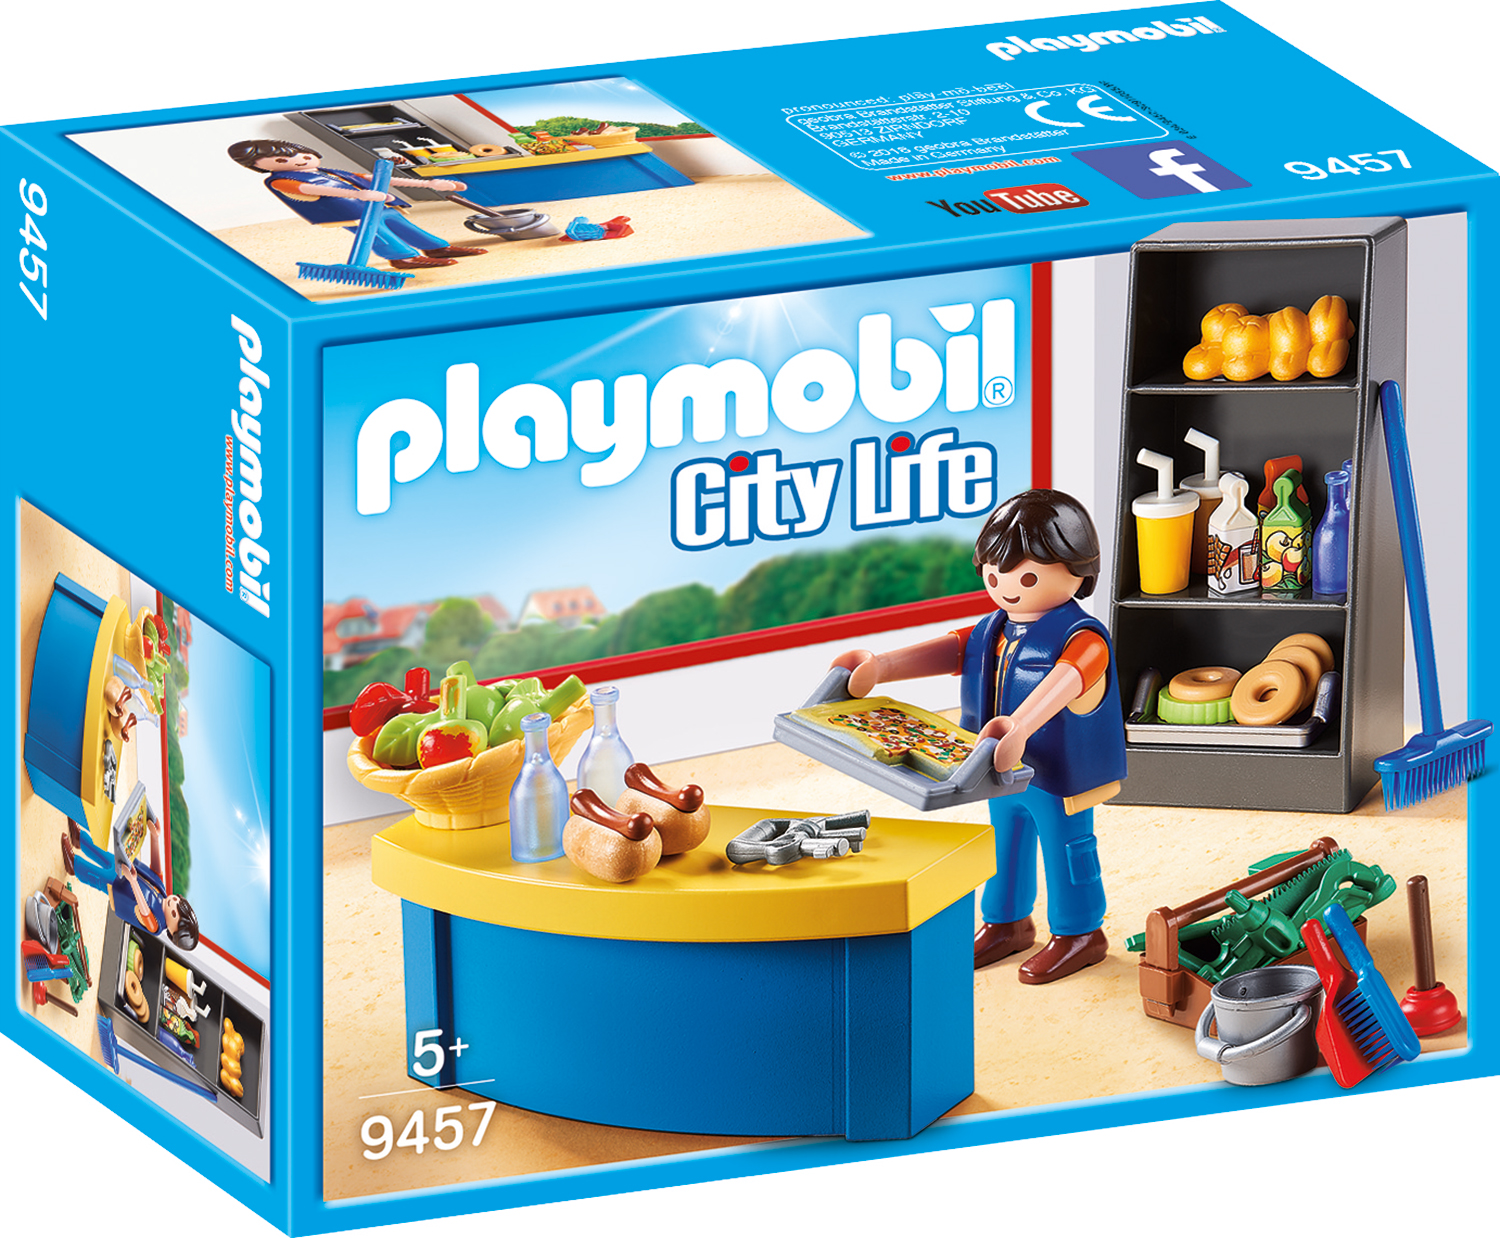 Ingrijitor si chiosc Playmobil City Life